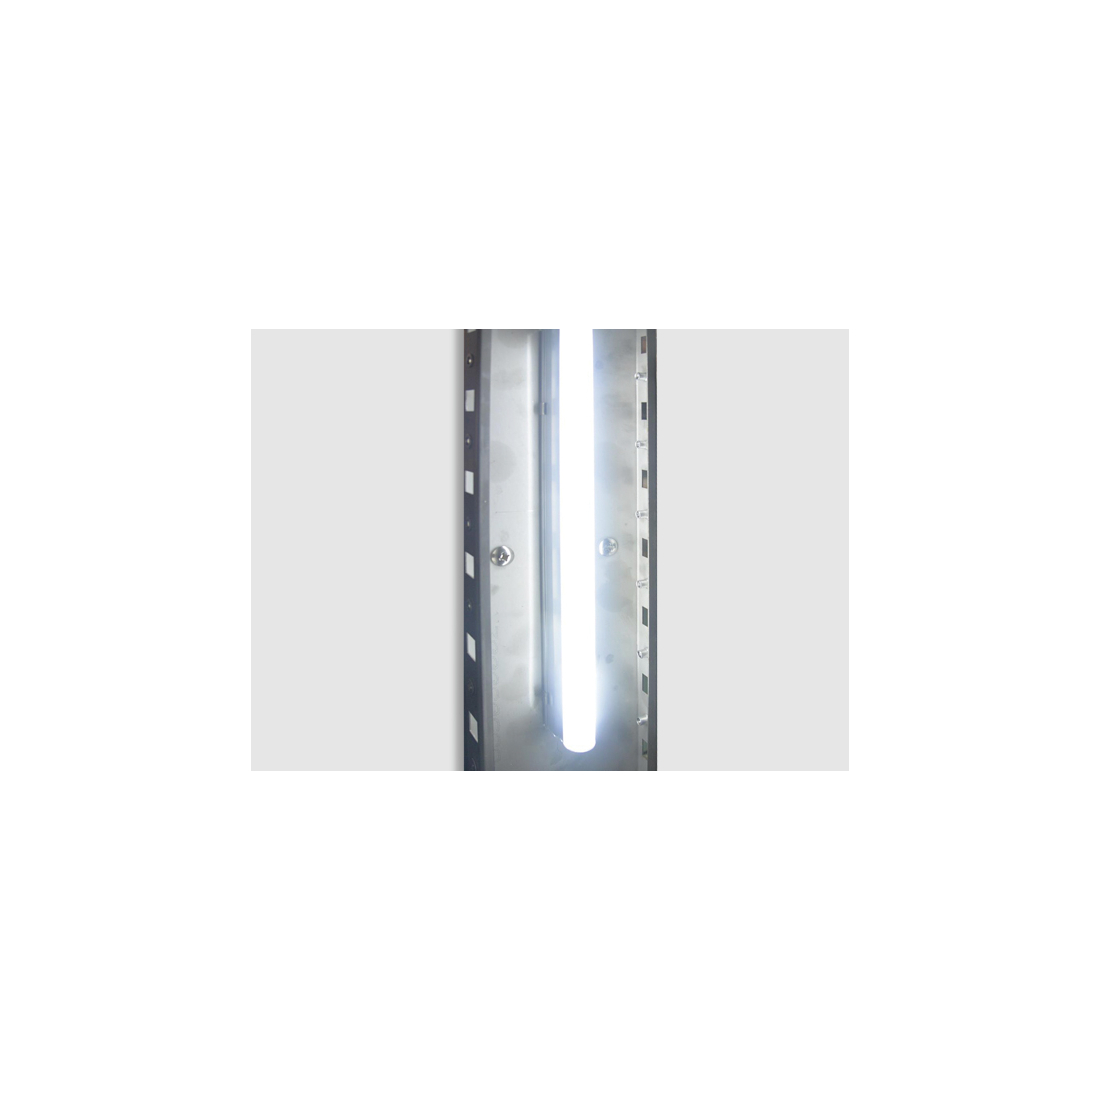 ثلاجة كاونتر بسطح عمل 4 باب زجاجية ,QRG4100, من كول هيد|mkayn|مكاين